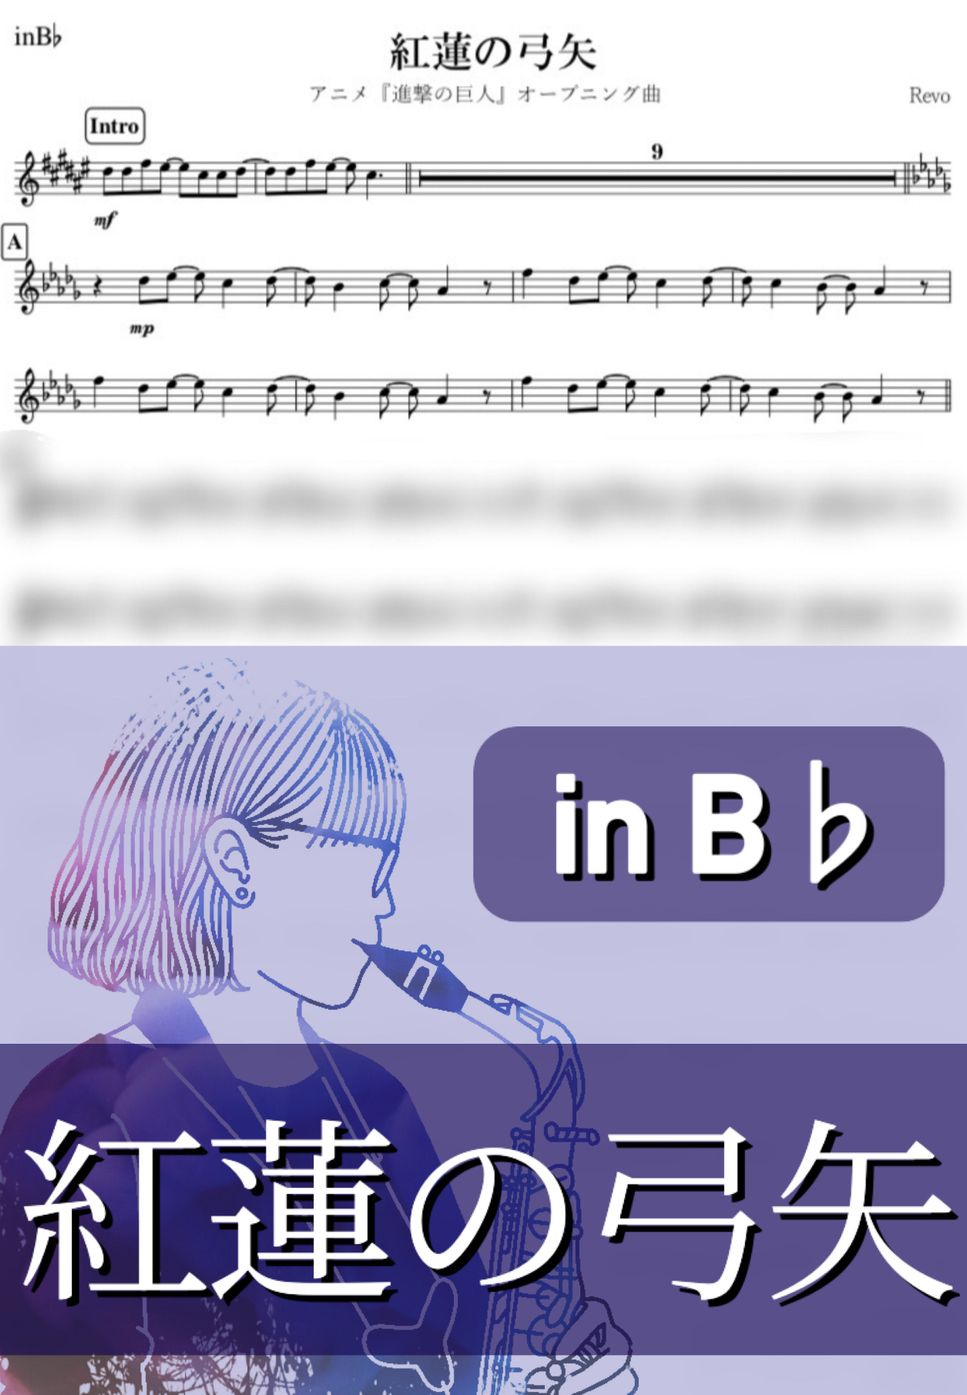 進撃の巨人 - 紅蓮の弓矢 (B♭) by kanamusic